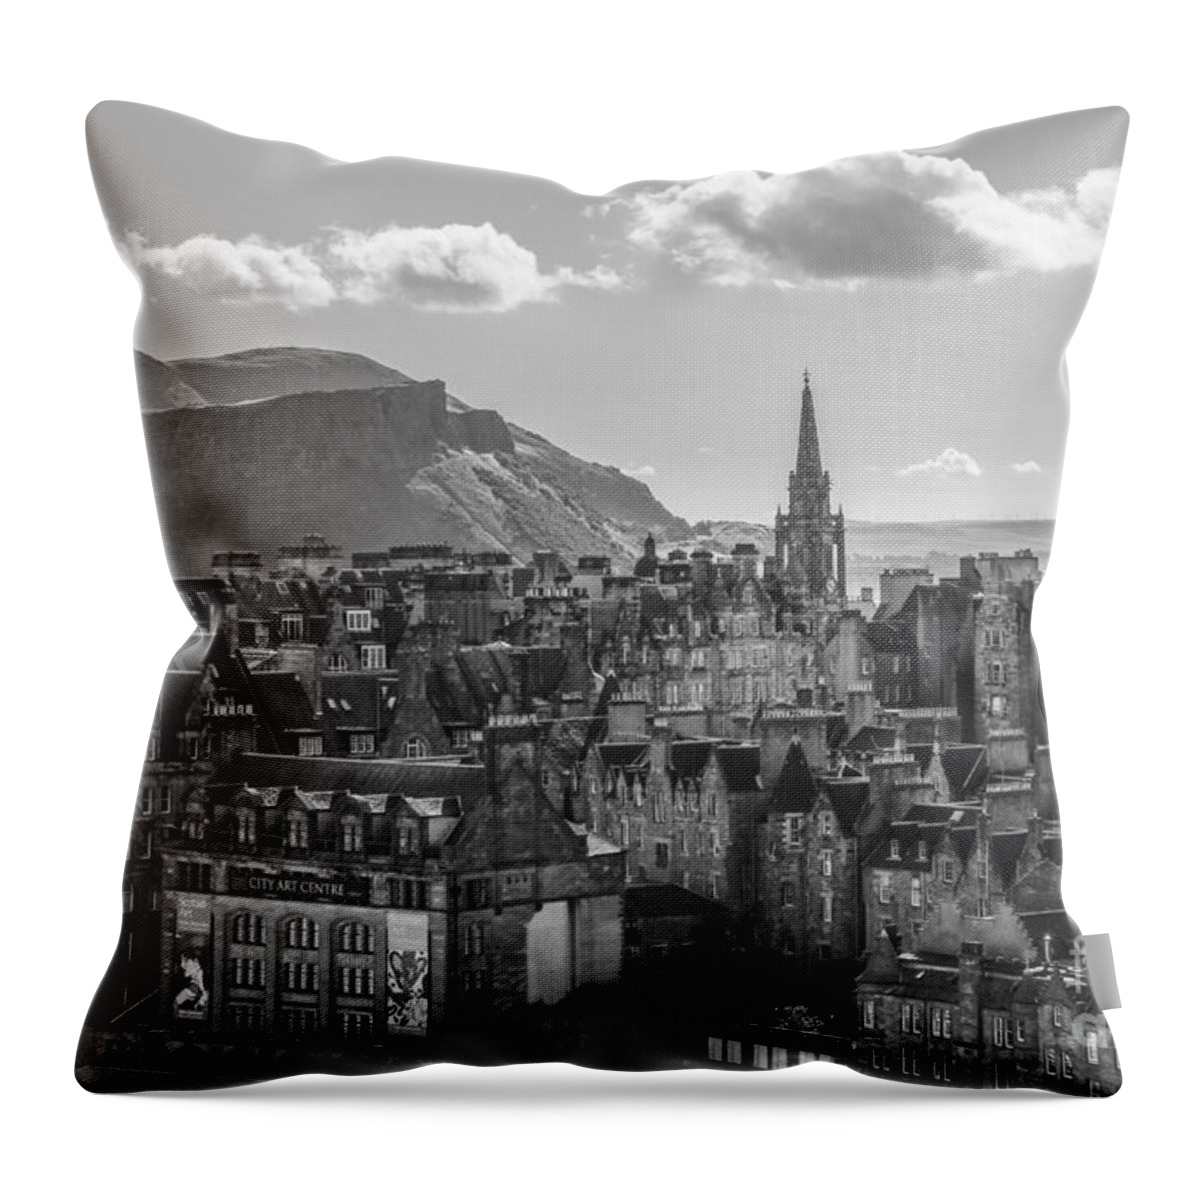 Edinburgh Throw Pillow featuring the photograph Edinburgh - Arthur's Seat by Amy Fearn